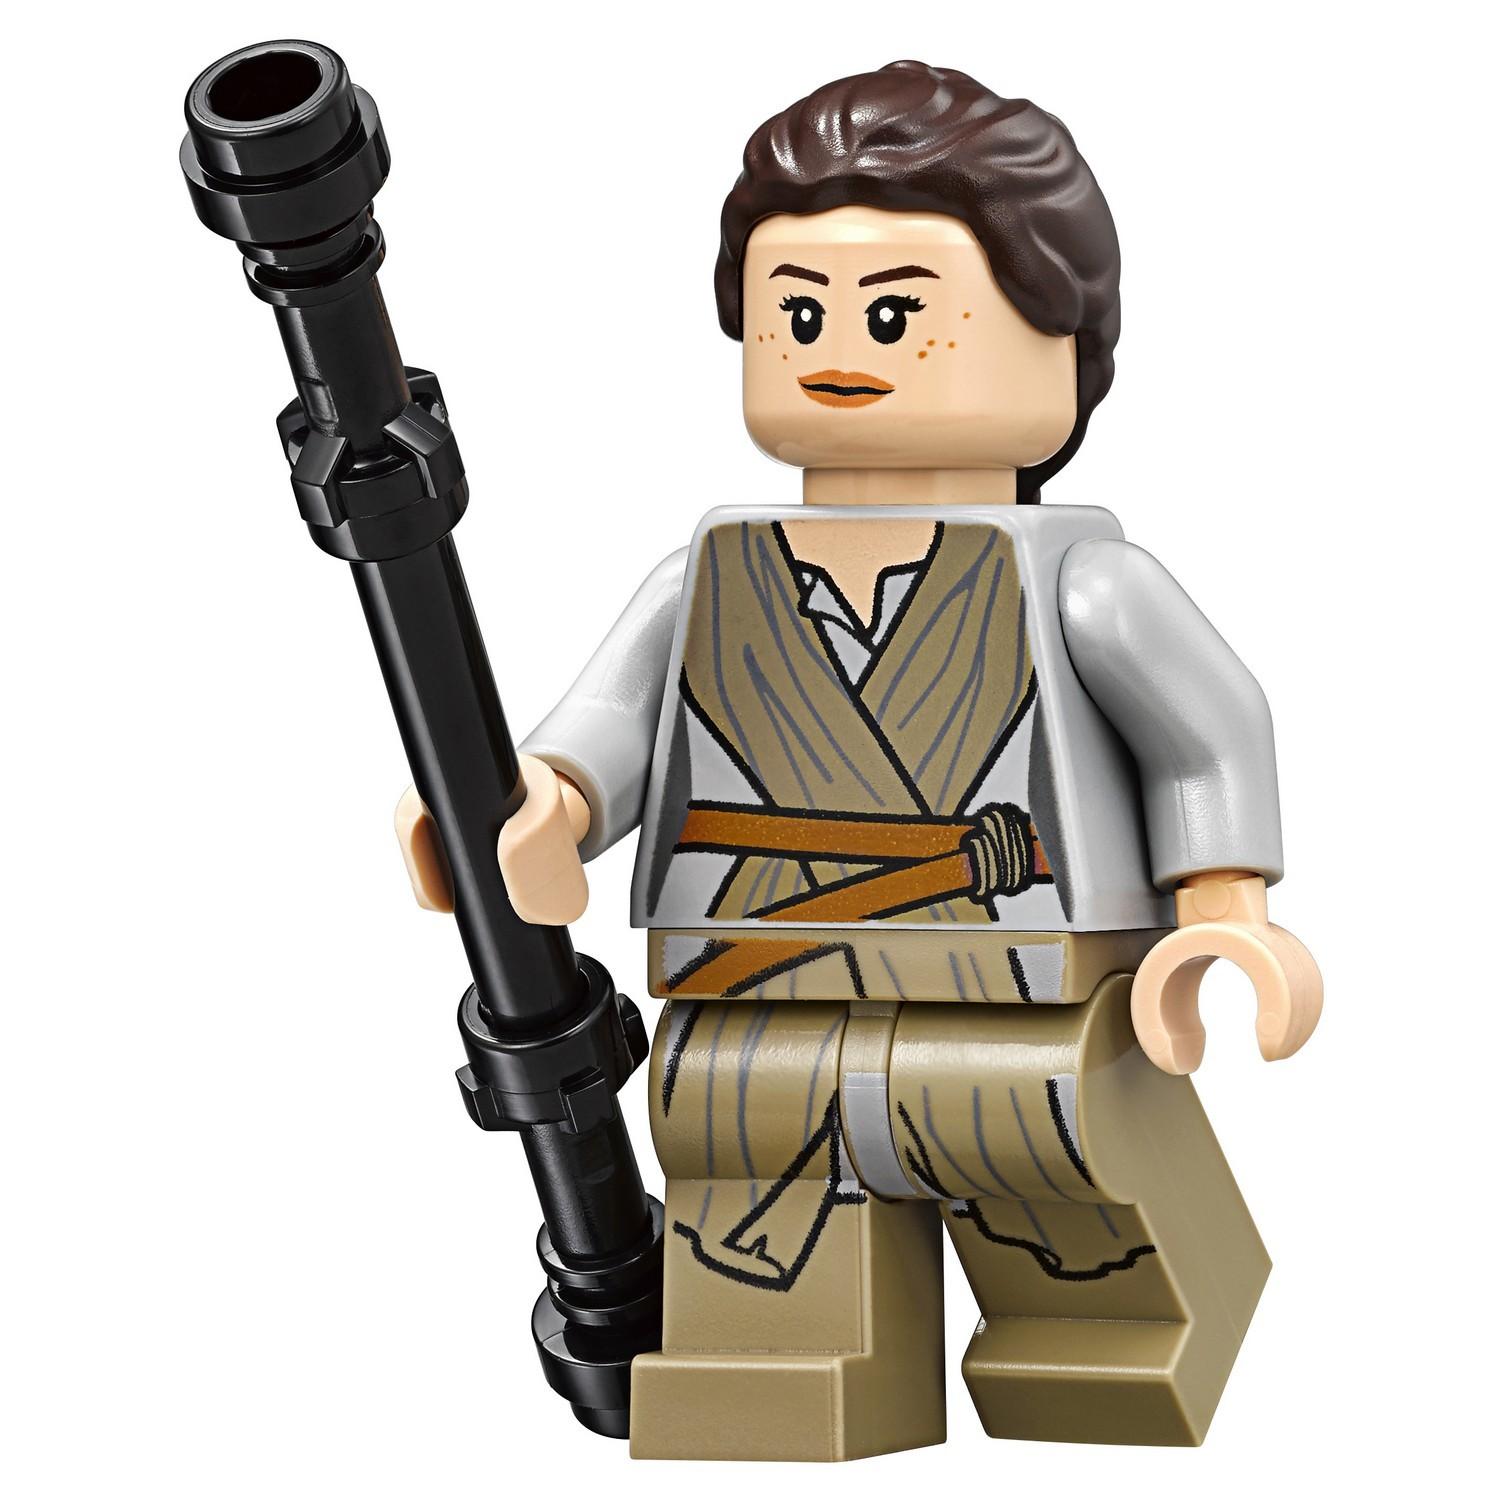 Lego Star Wars 75178 Квадджампер Джакку